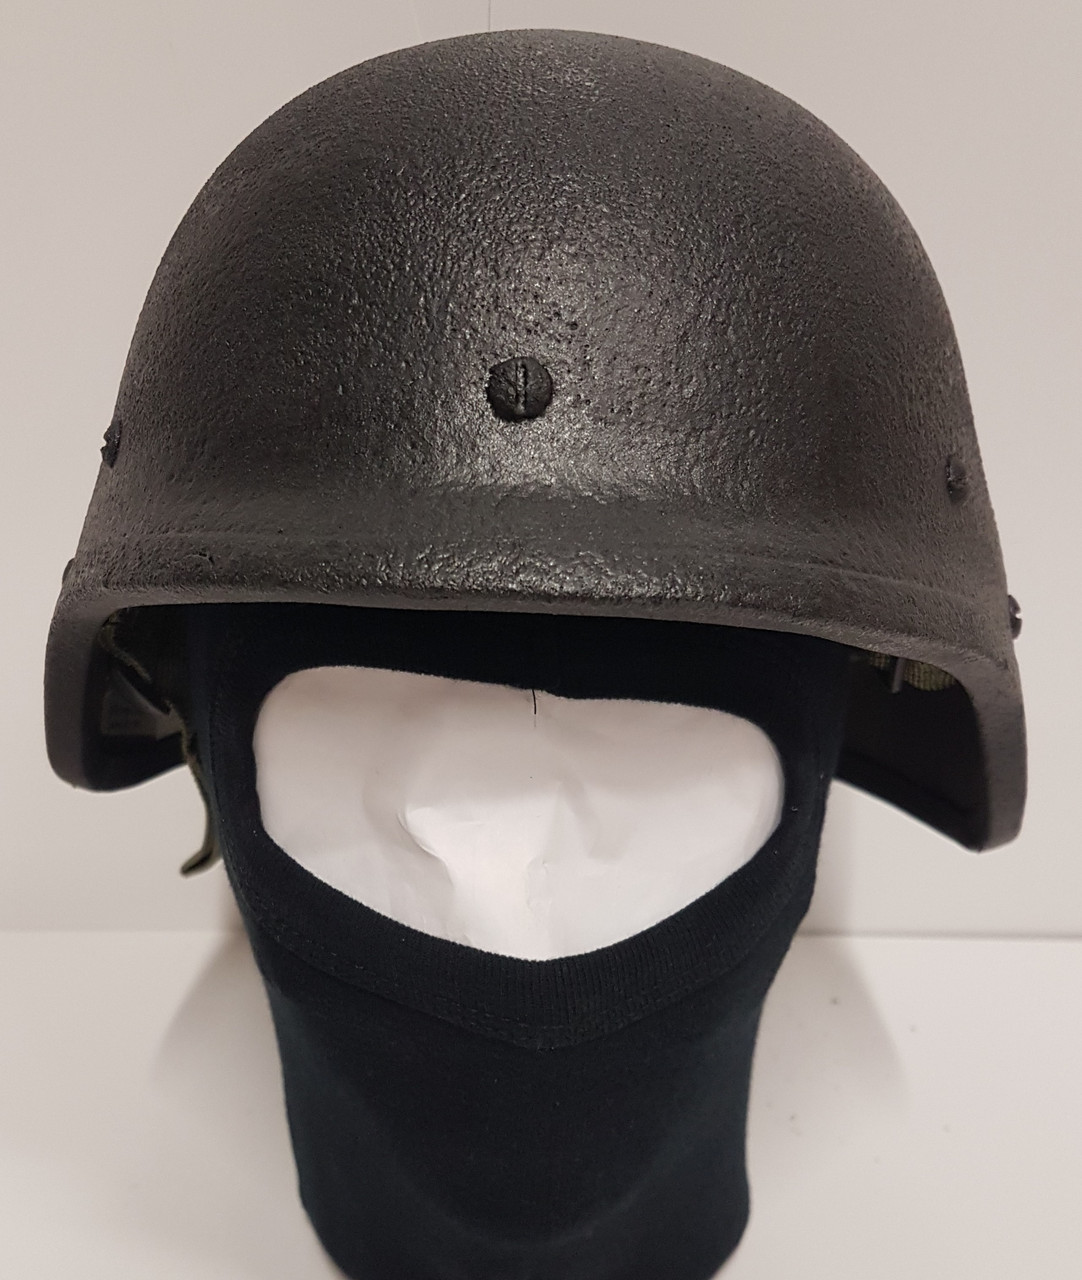 British  Armed Forces  RBR Kevlar Helmet Med/Large 002